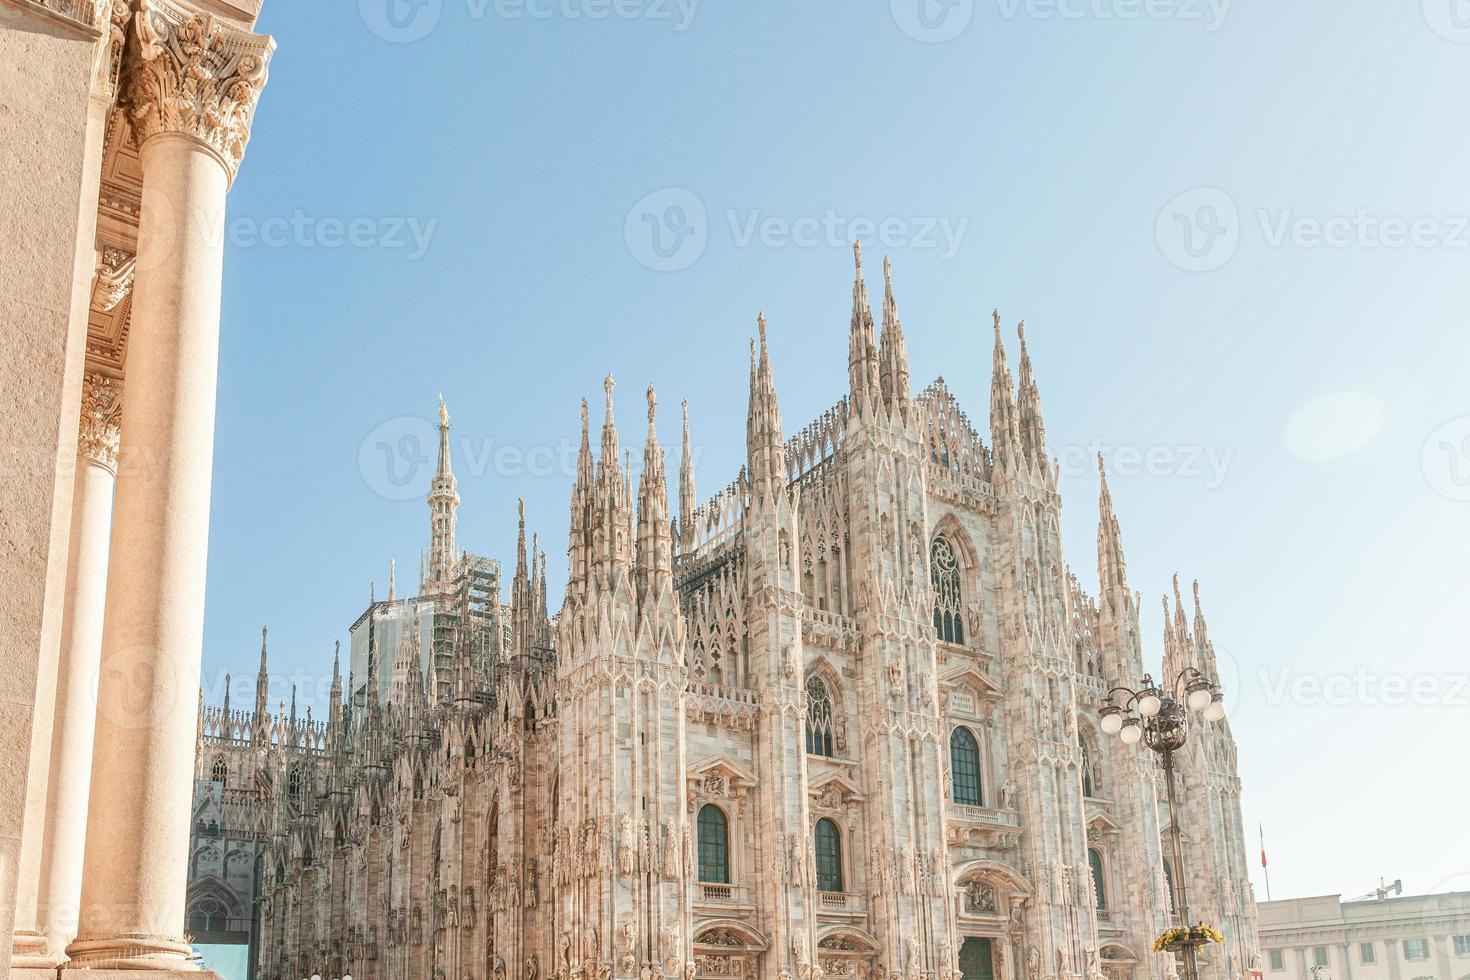 famosa iglesia catedral de milán duomo di milano con capiteles góticos y estatuas de mármol blanco. principal atracción turística en la plaza de milán lombardía italia. vista panorámica de la antigua arquitectura gótica y el arte foto